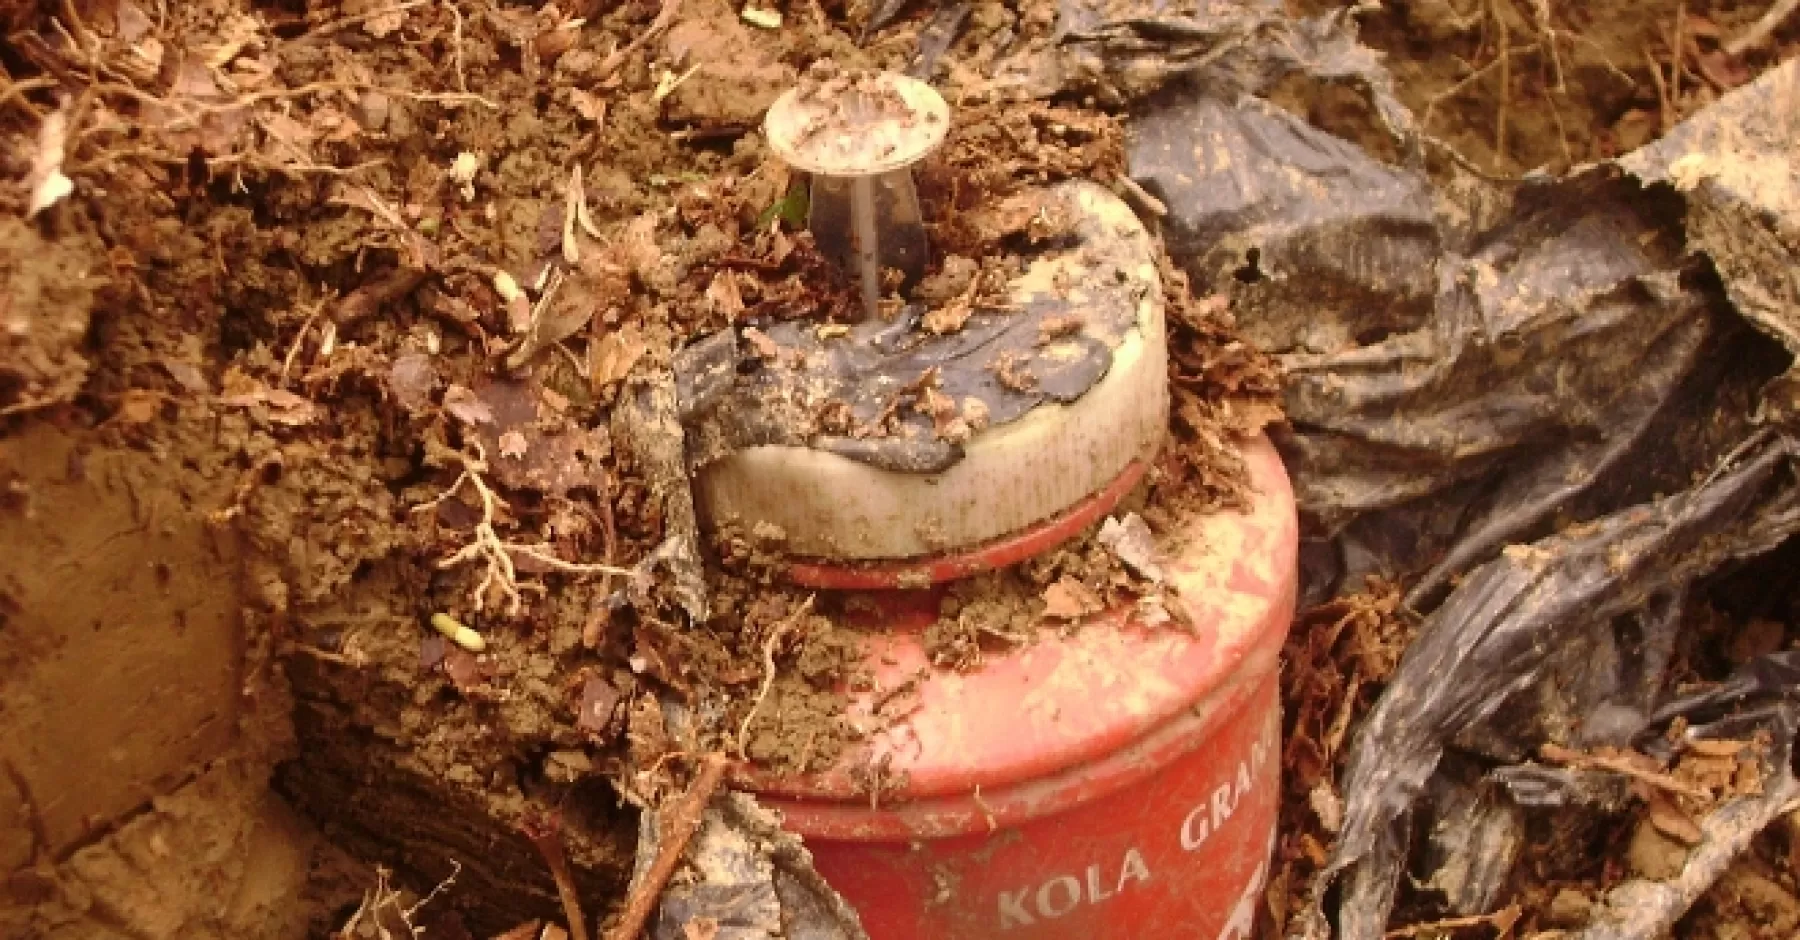 Con el campesino afectado por una bomba antipersonal en Fortul, ya son cuatro casos presentados en el departamento de Arauca durante el año 2018.